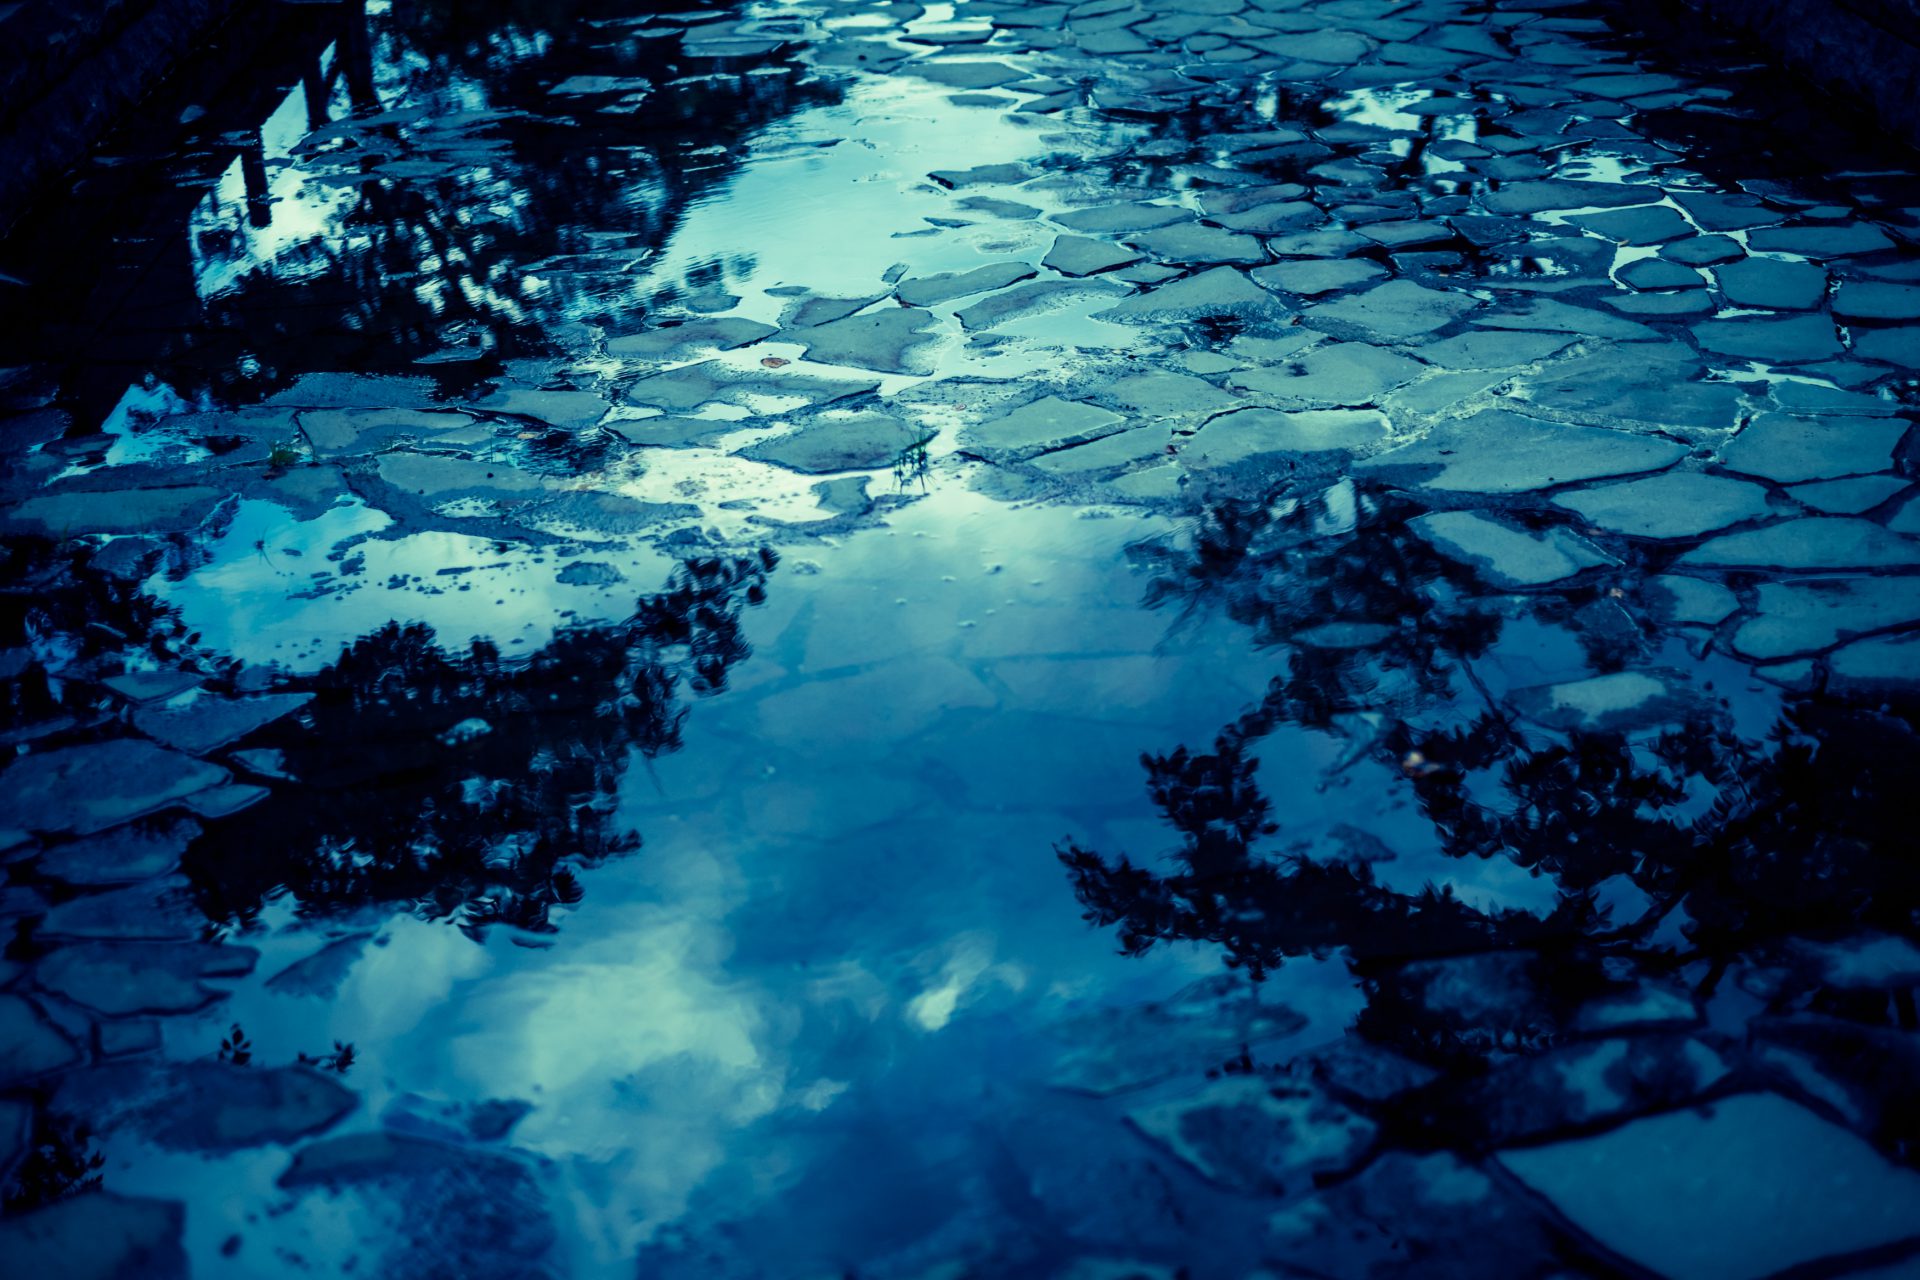 水溜りと映り込む空（画面全体が水底のような深い蒼の世界。水たまり映るのは、黒い影のよう樹々、白い雲の浮かぶ青空。またガラスのかけらのような地面、小石が浮かぶ））